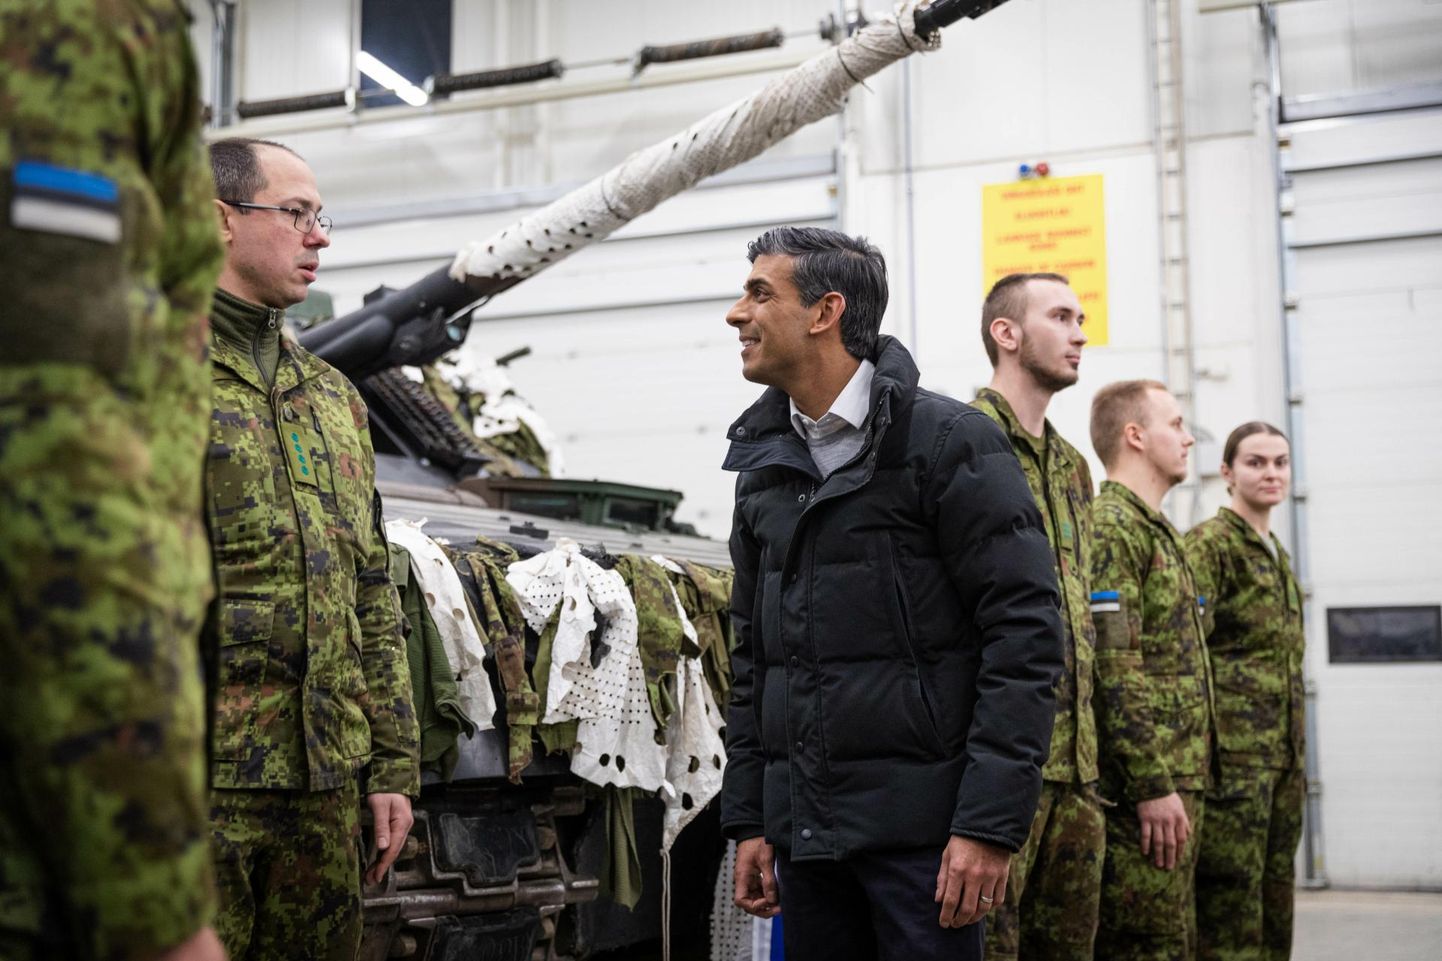 Briti peaminister Rishi Sunak käis mullu detsembris Tapal sõdureid vaatamas. Pildil vestlemas Eesti kaitseväelastega.